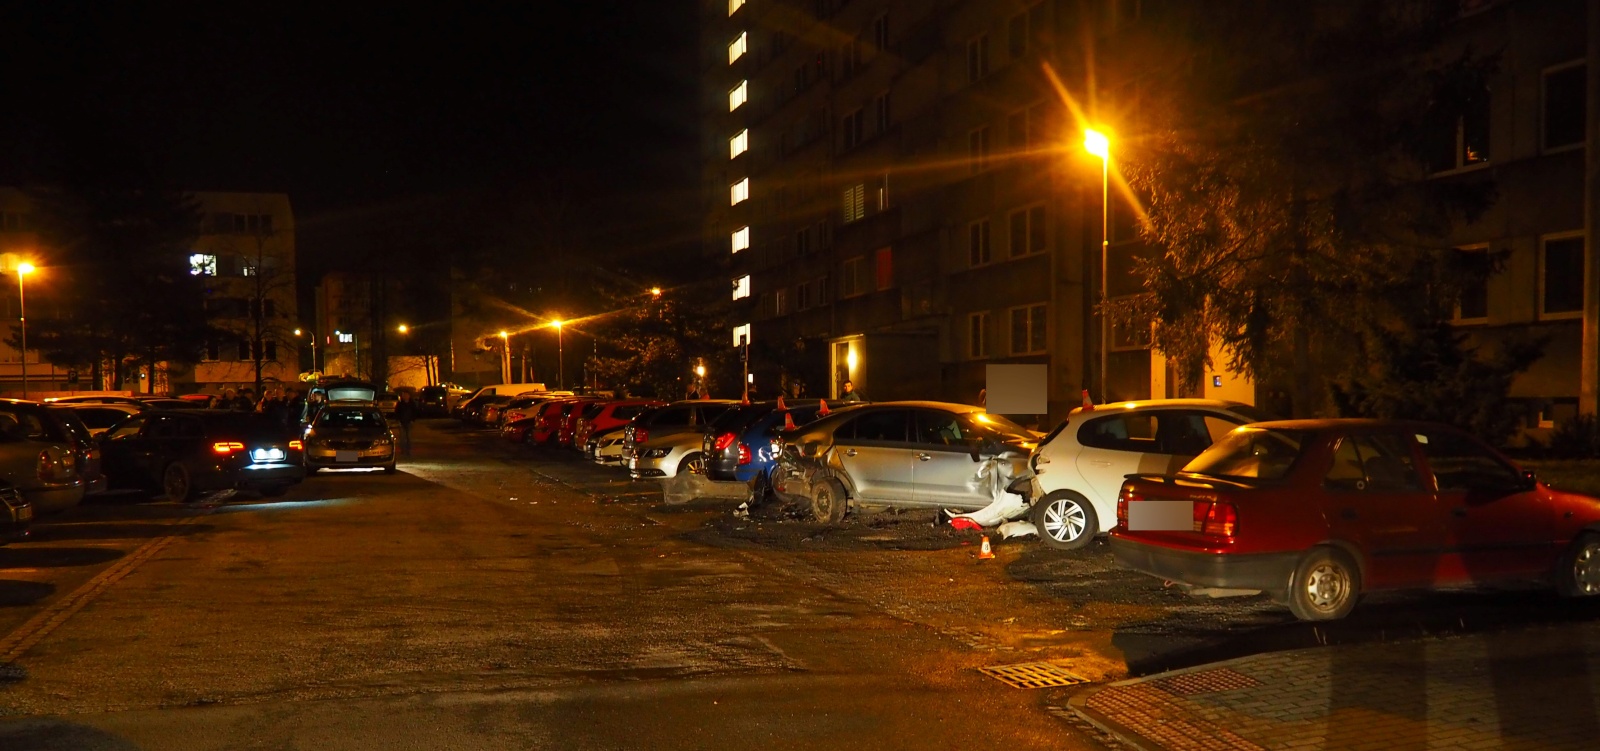 Šest nabouraných aut v noci v Karviné, viník z Audi utekl, pomůžete  policii? - Karvinský a havířovský deník